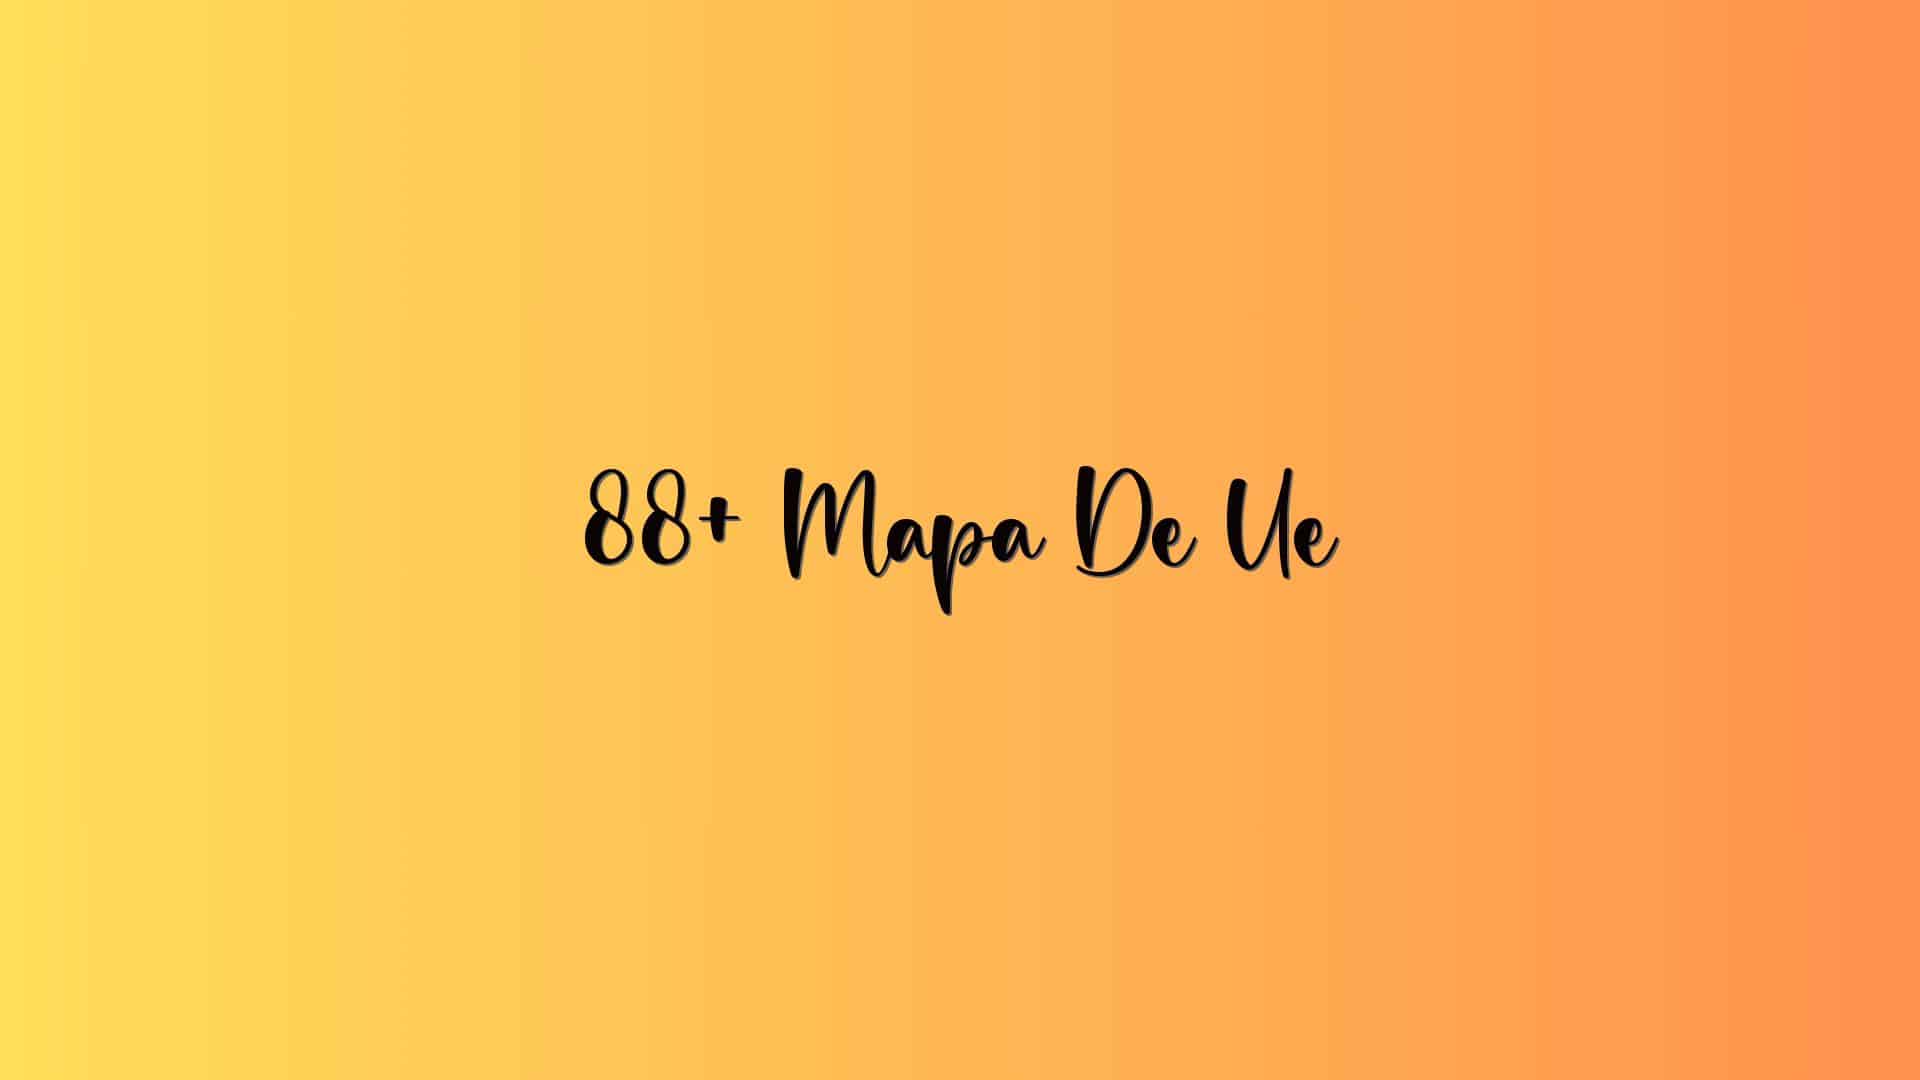 88+ Mapa De Ue